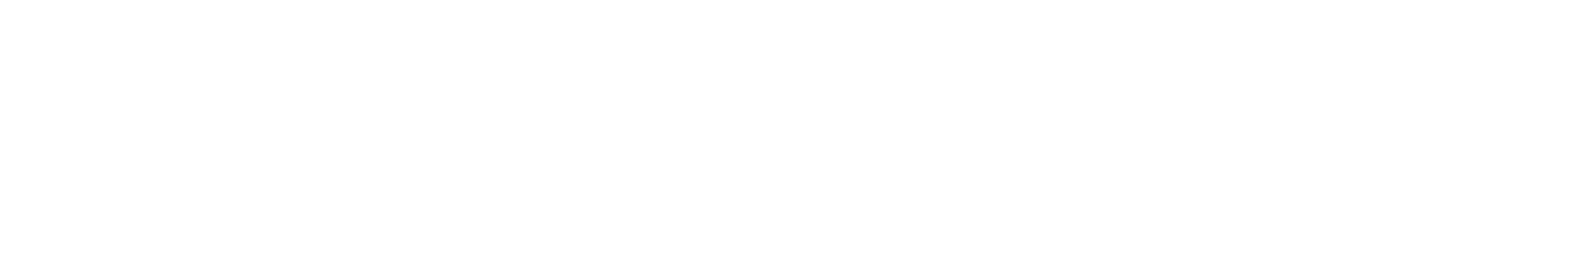 Jet2 logo grand pour les fonds sombres (PNG transparent)